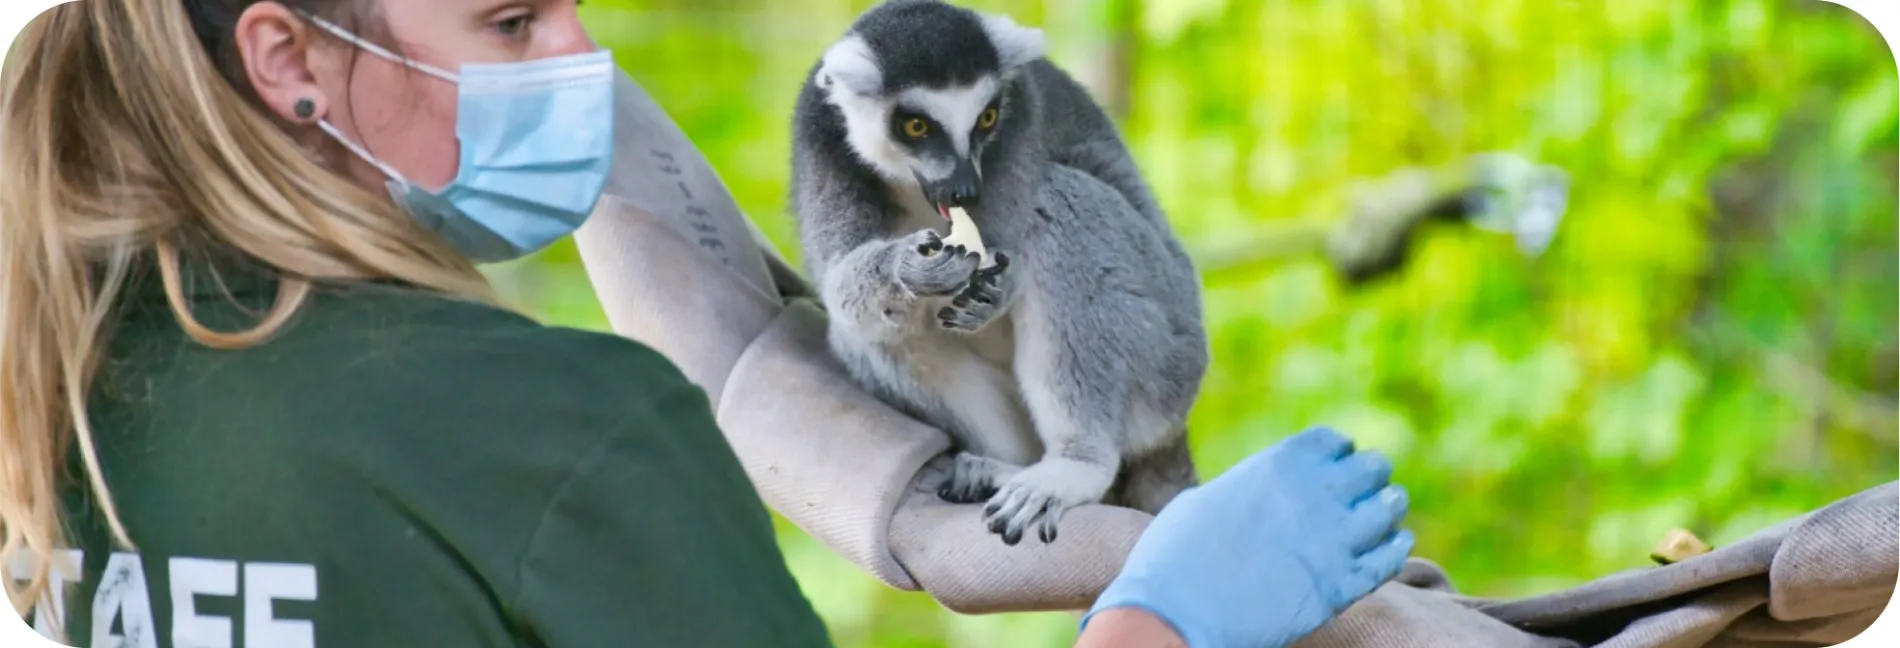 a lemur eating a banana